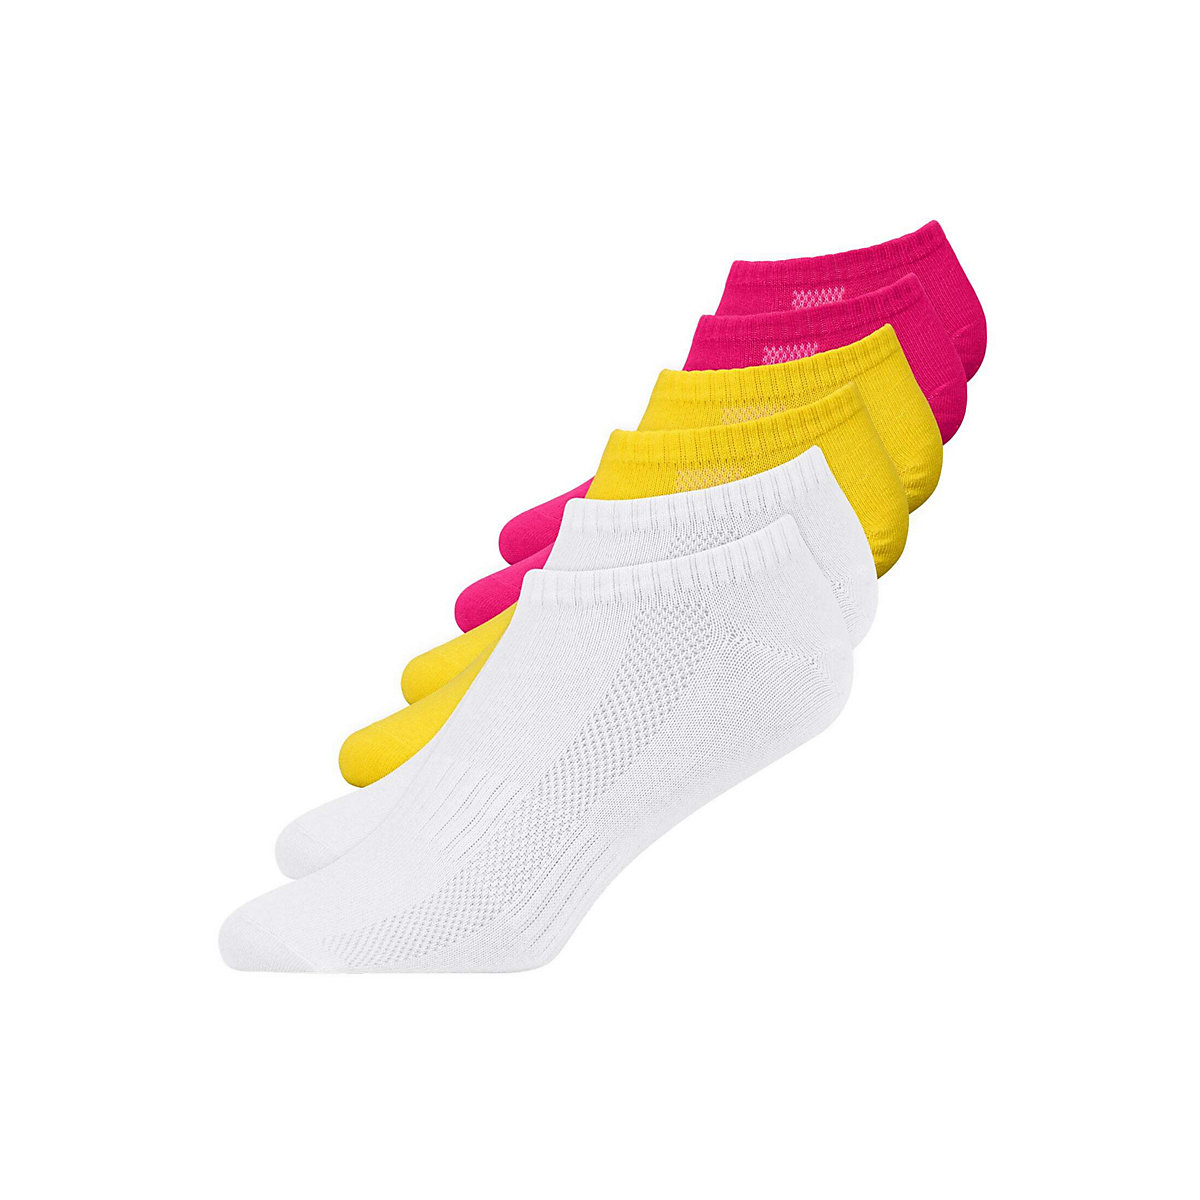 SNOCKS Sneaker Socken für Herren & Damen aus Bio-Baumwolle pink/gelb